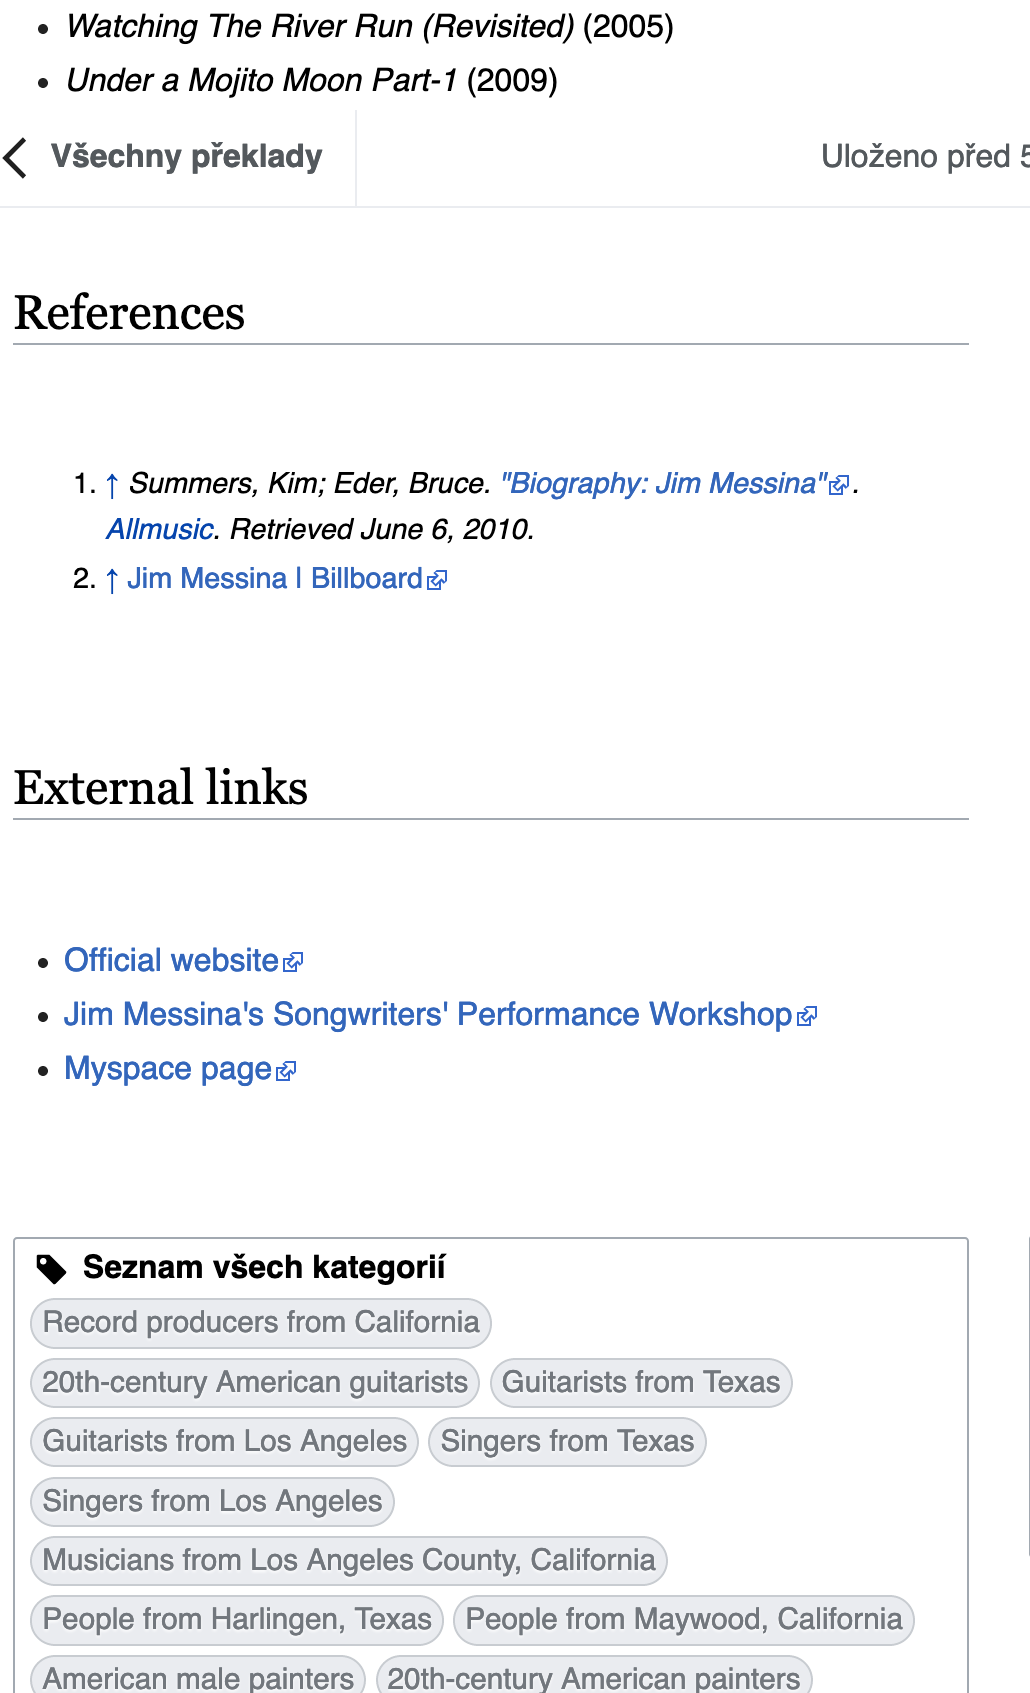 Screenshot_2019-06-26 Přeložit stránku – Wikipedie.png (1×1 px, 202 KB)